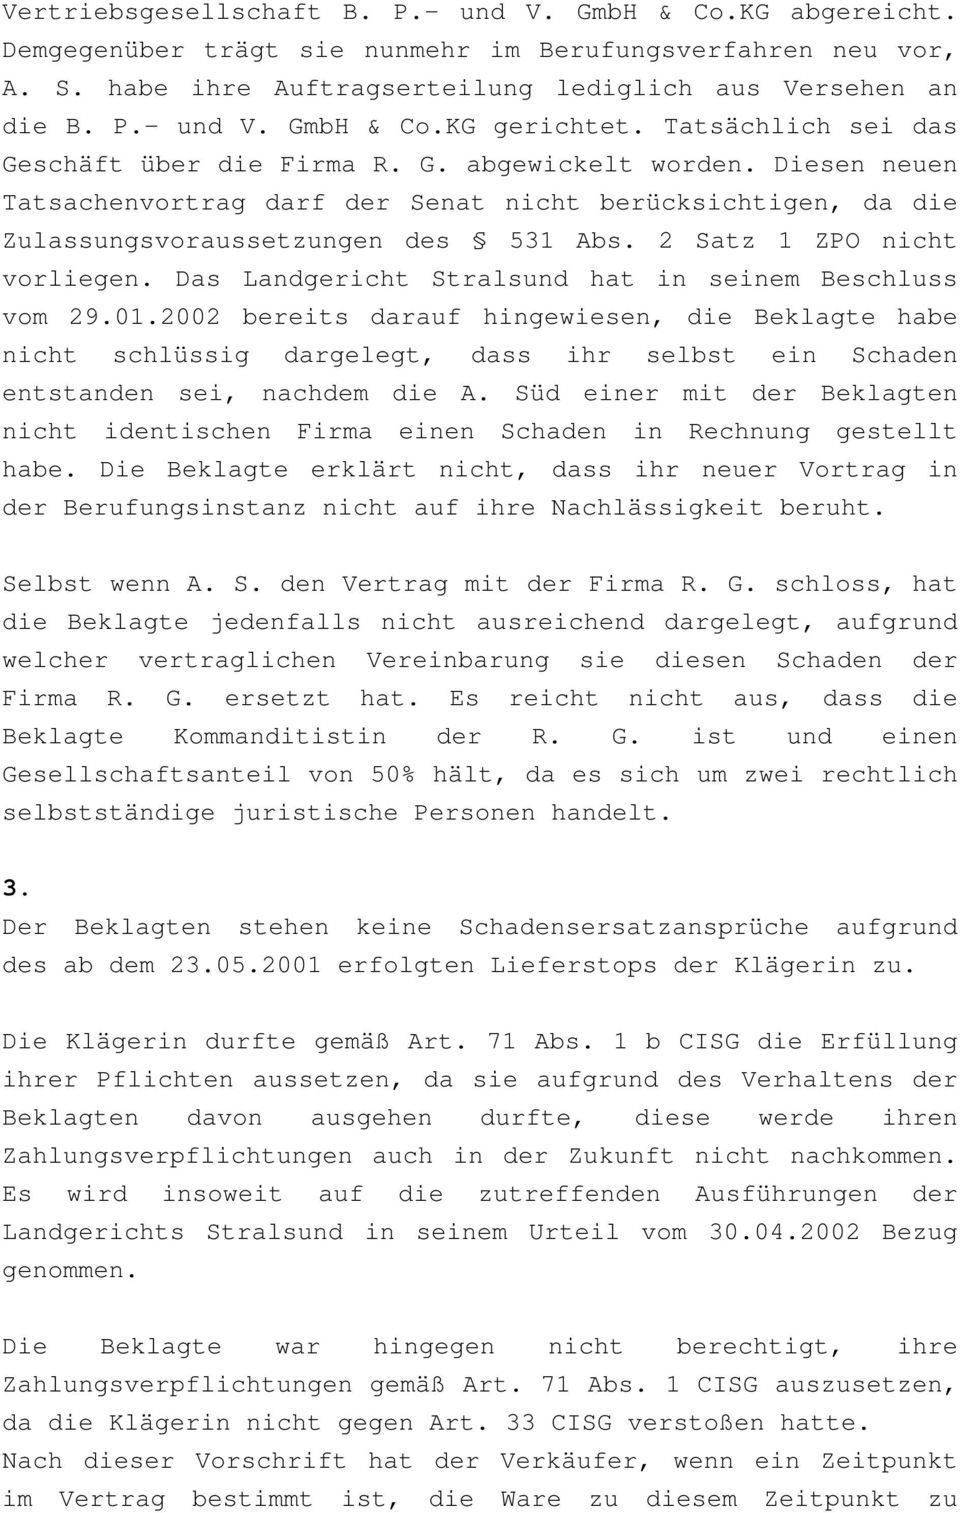 2 Satz 1 ZPO nicht vorliegen. Das Landgericht Stralsund hat in seinem Beschluss vom 29.01.